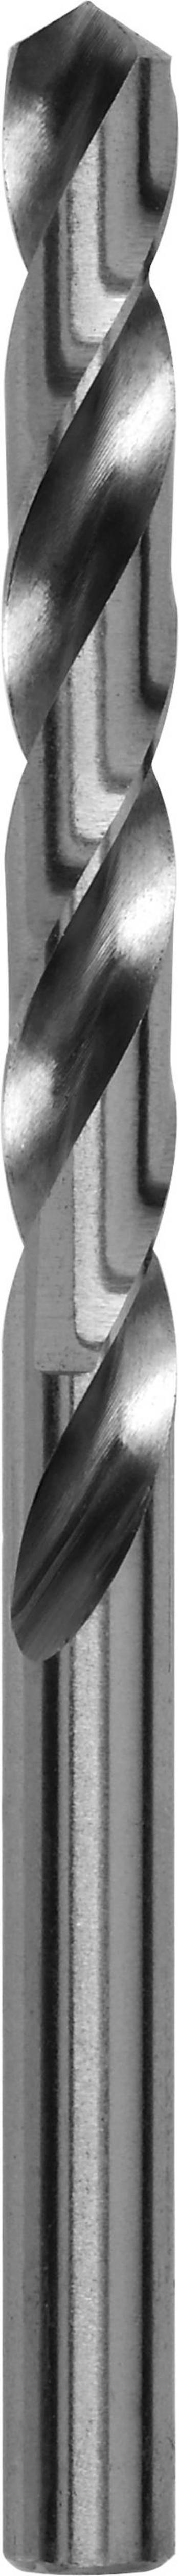 Kovový spirálový vrták Bosch Accessories 2609255034, 1 mm, 34 mm, HSS, 2 ks